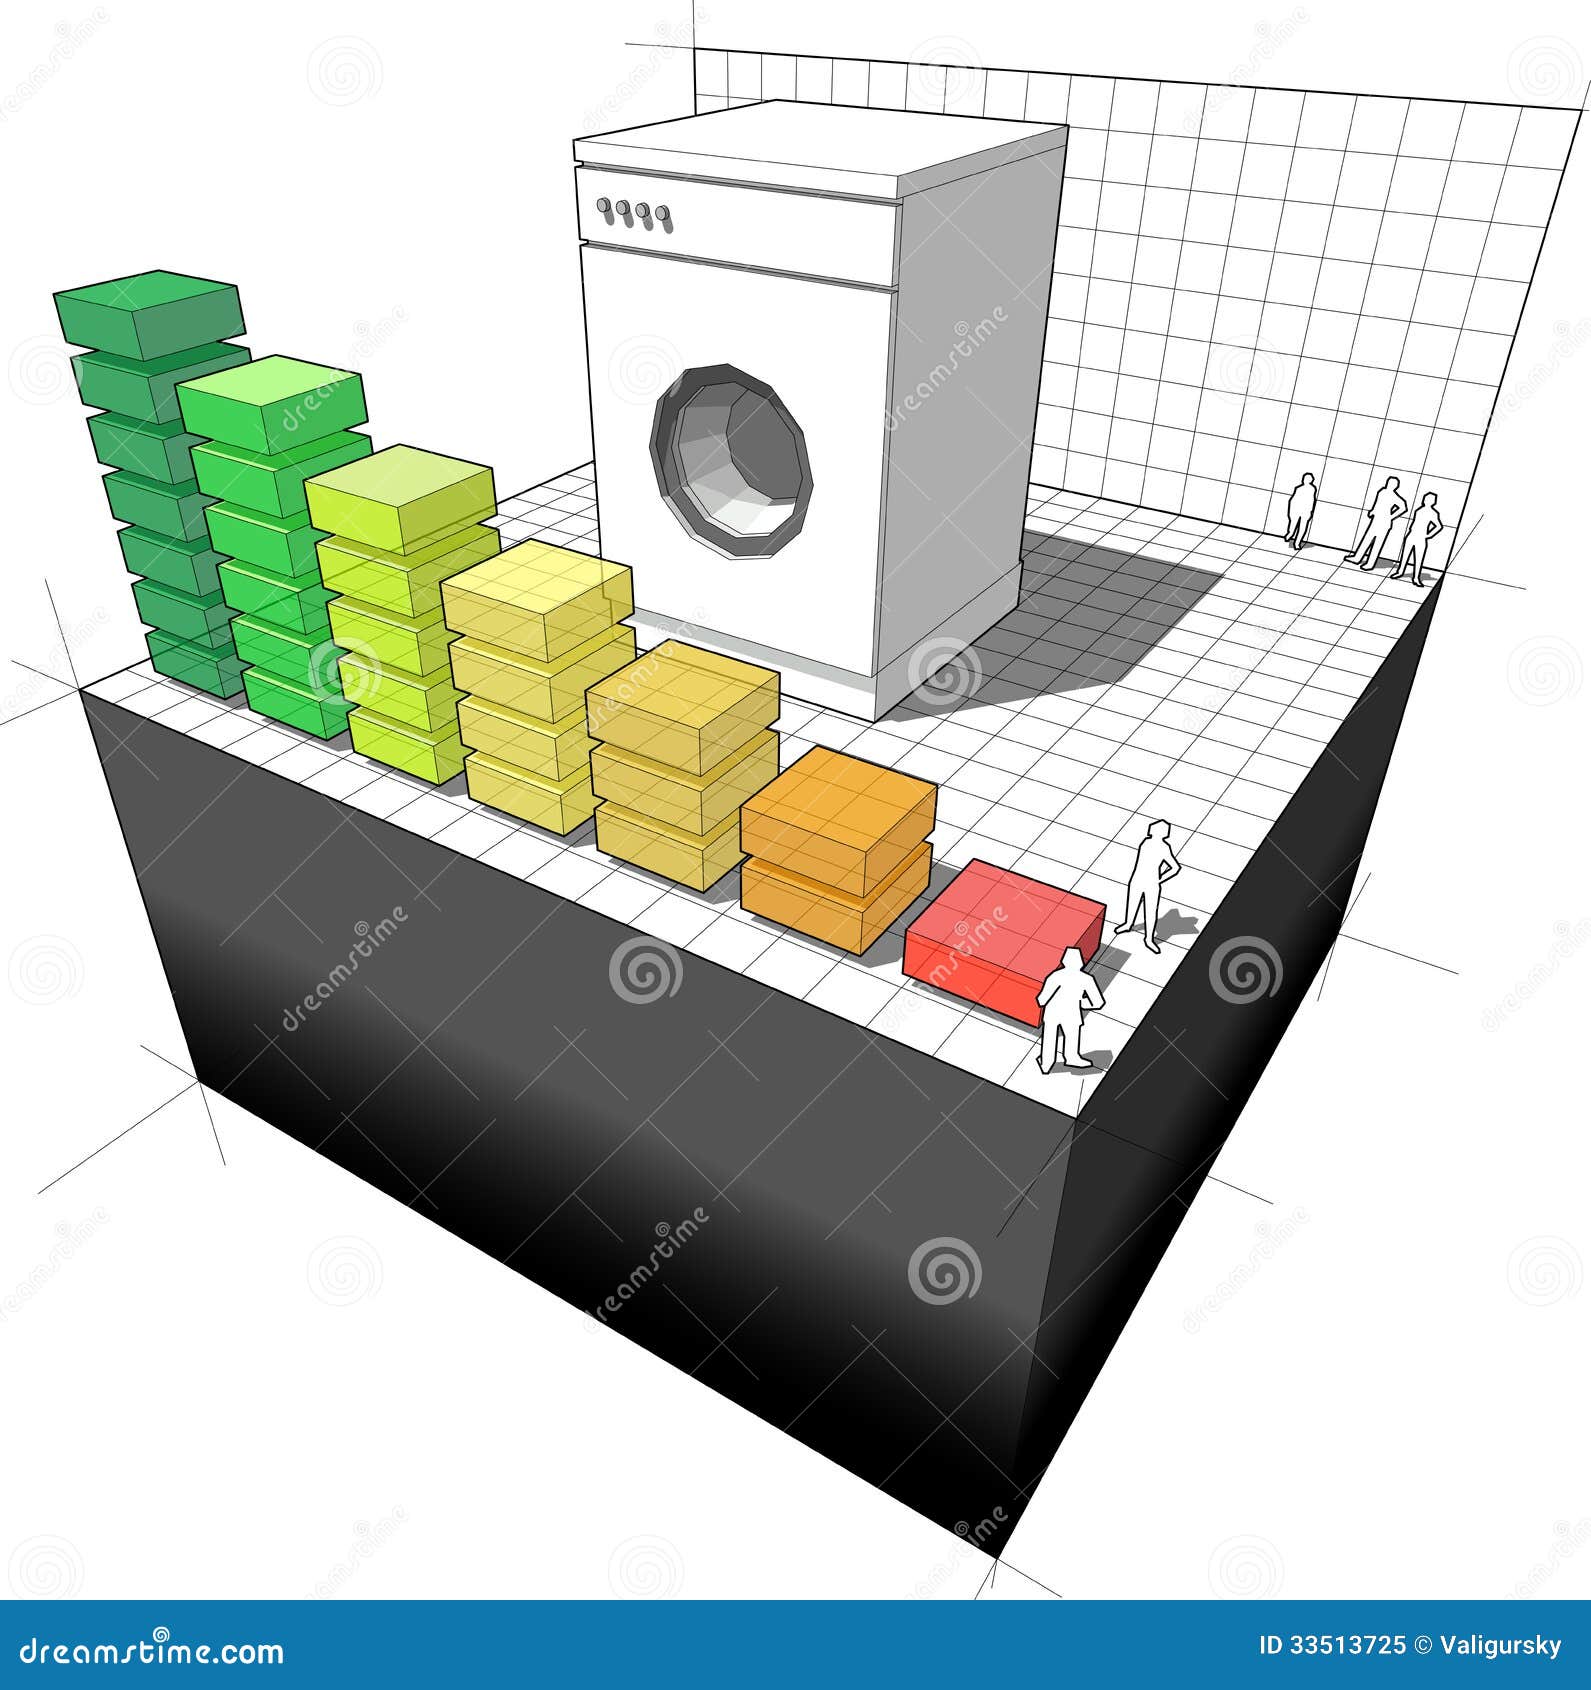 washing-machine-energy-rating-diagram-royalty-free-stock-photo-image